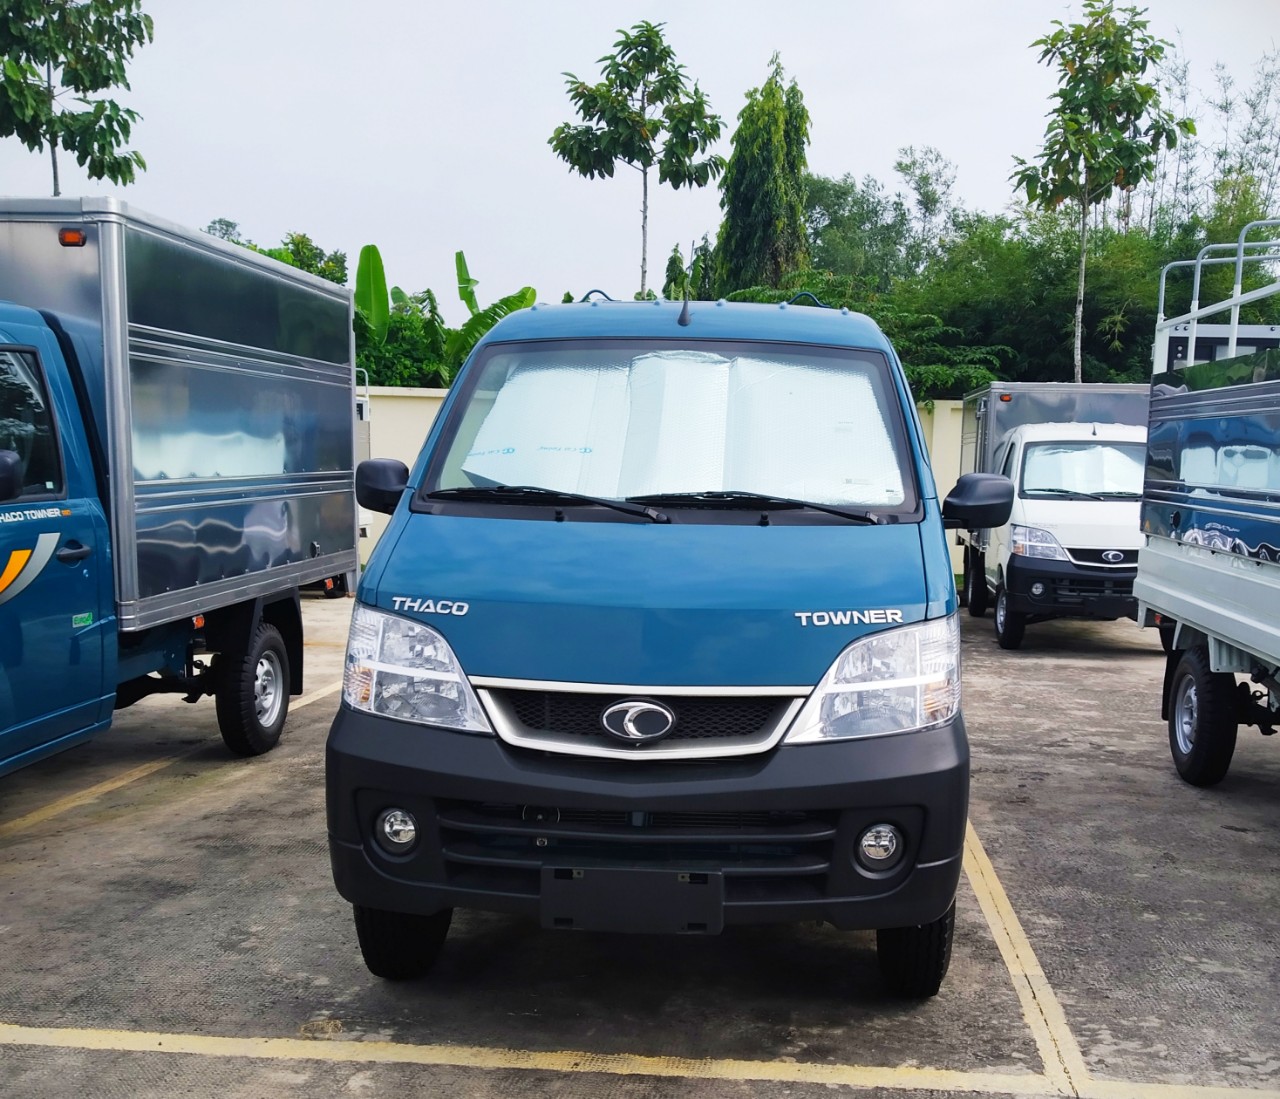 Cần mua bán xe tải Thaco Towner990- 990kg giá tốt, hỗ trợ trả góp Bà Rịa Vũng Tàu-9